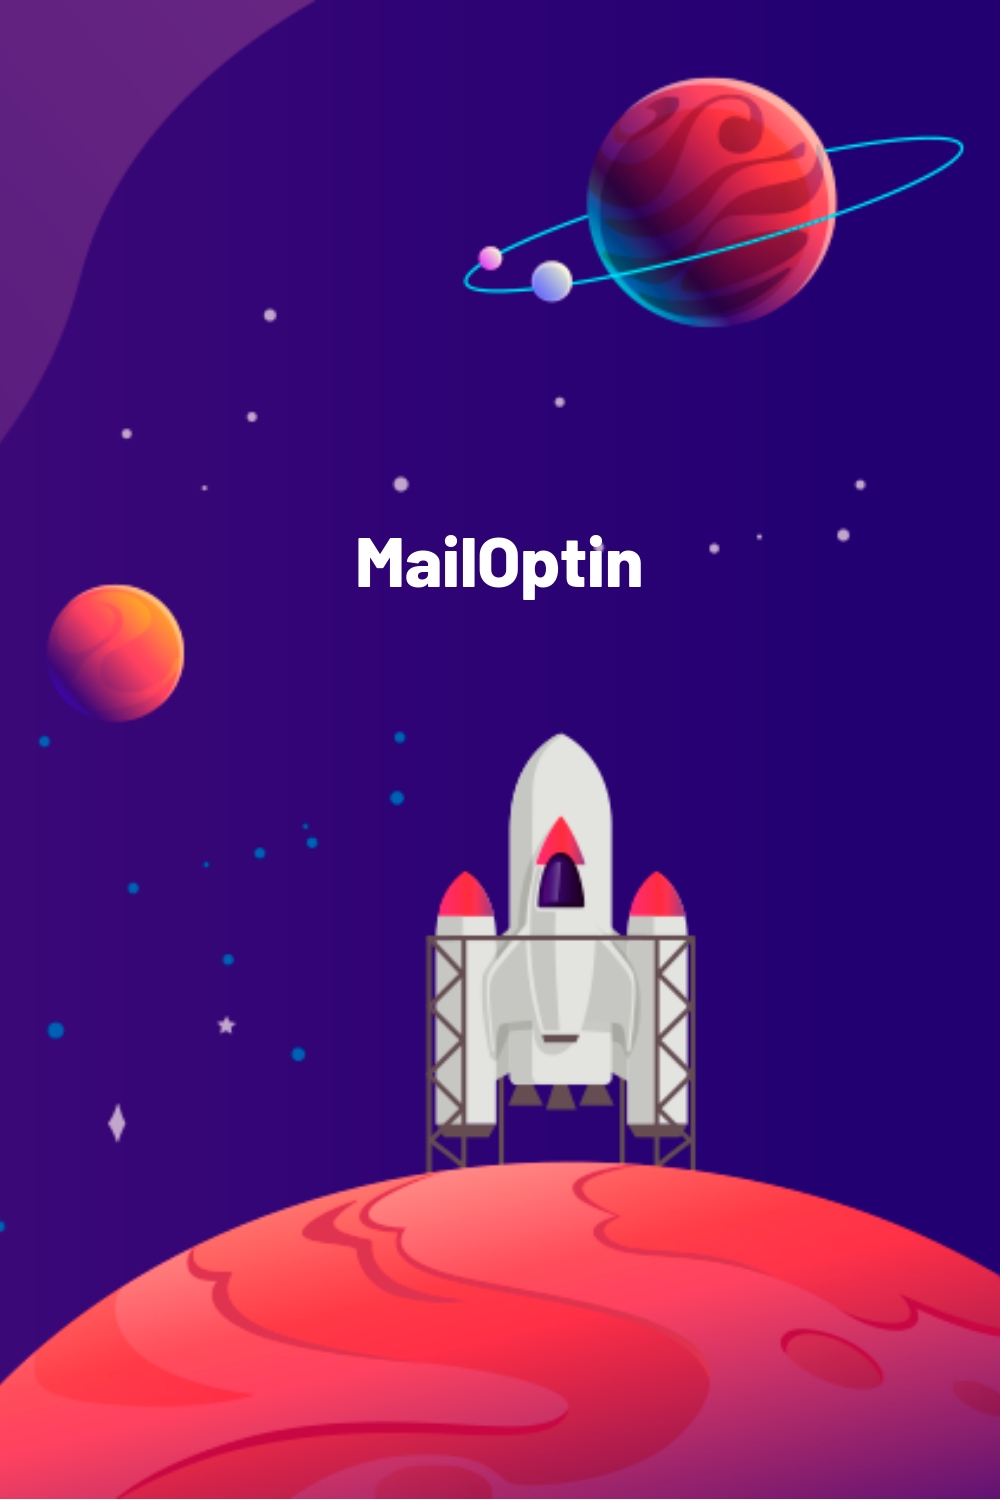 MailOptin